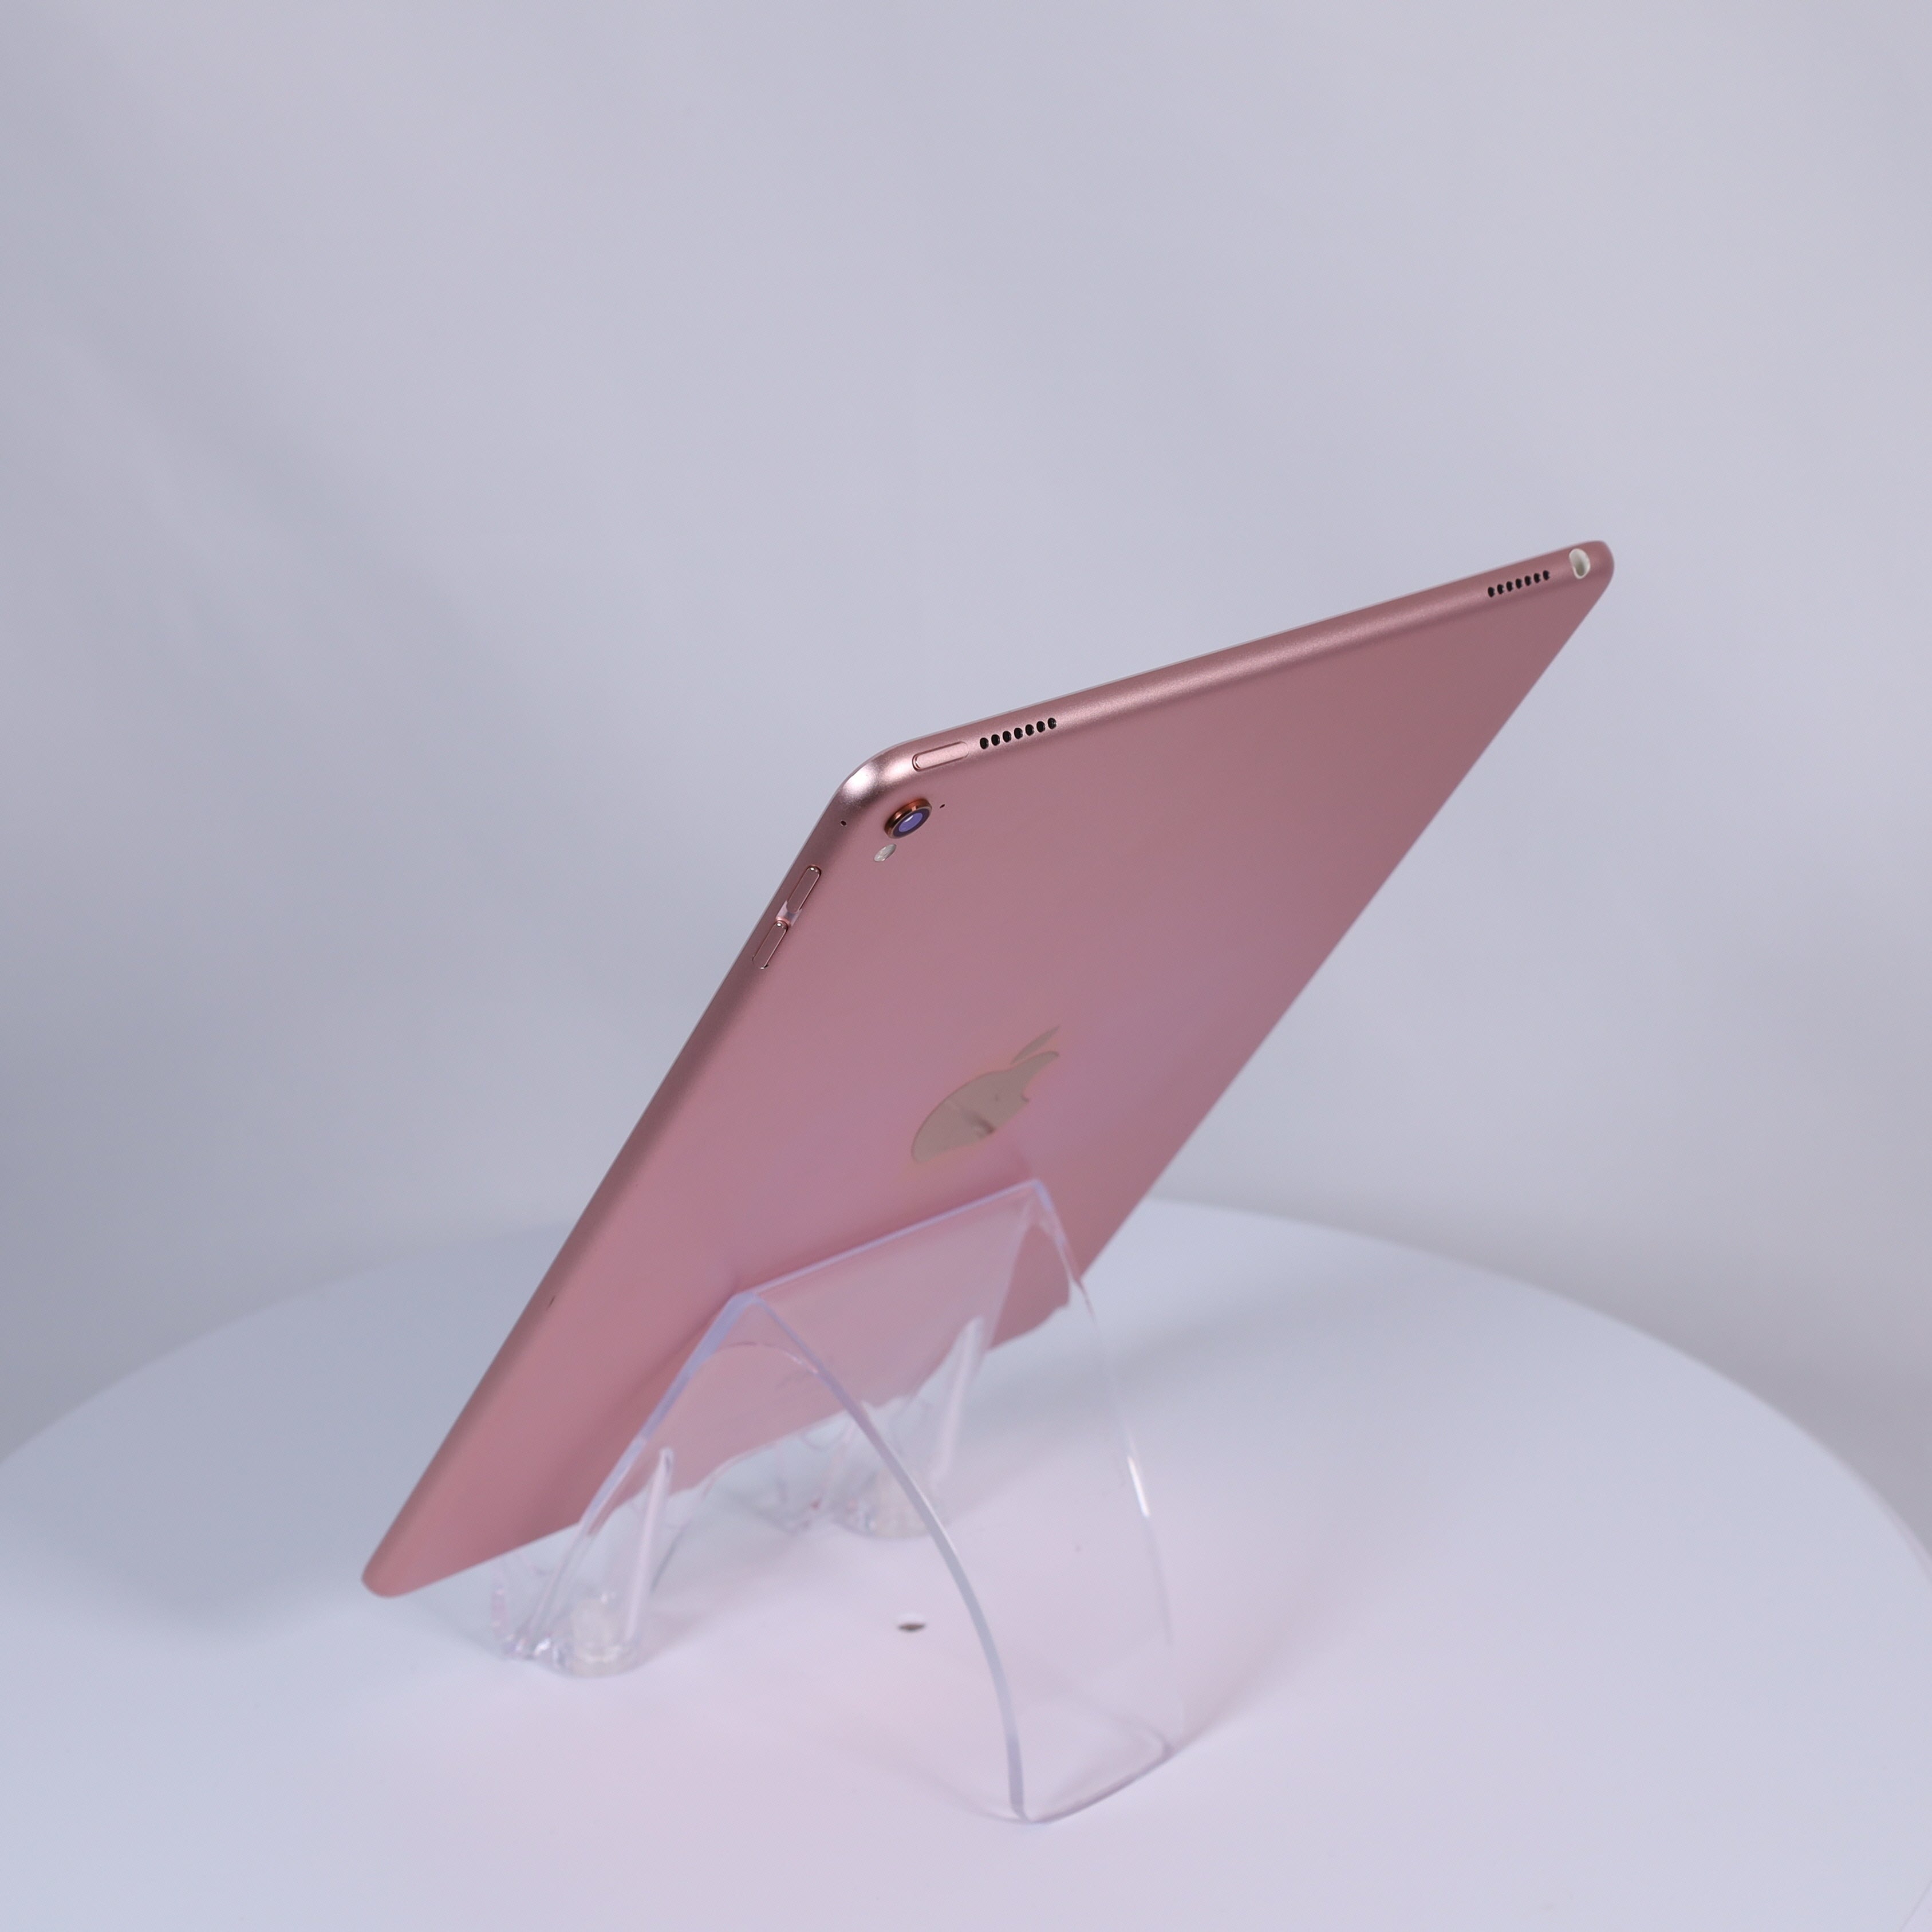 iPad Pro 32GB ローズピンク